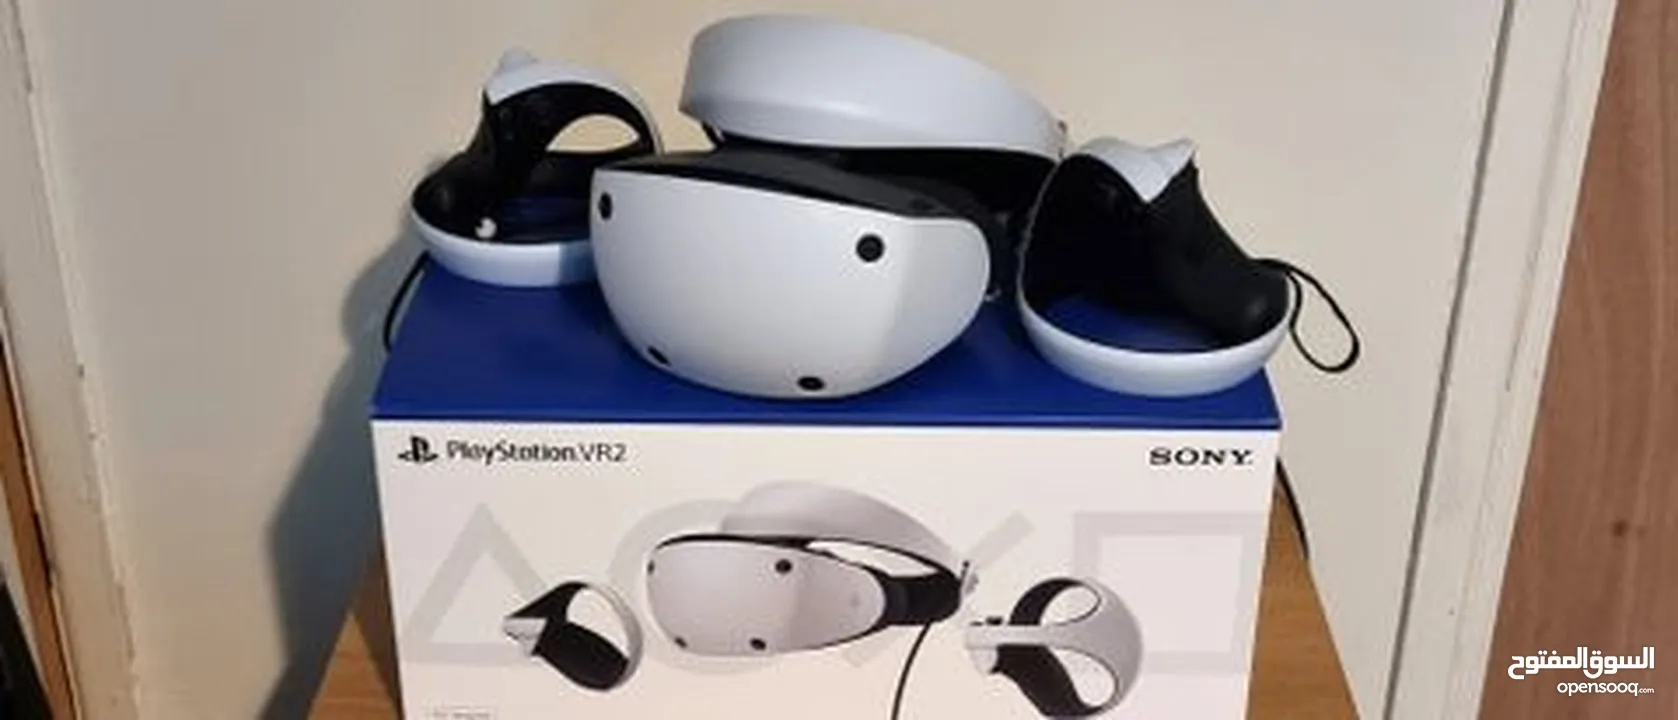 PS5 VR2 بلايستيشن5 VR